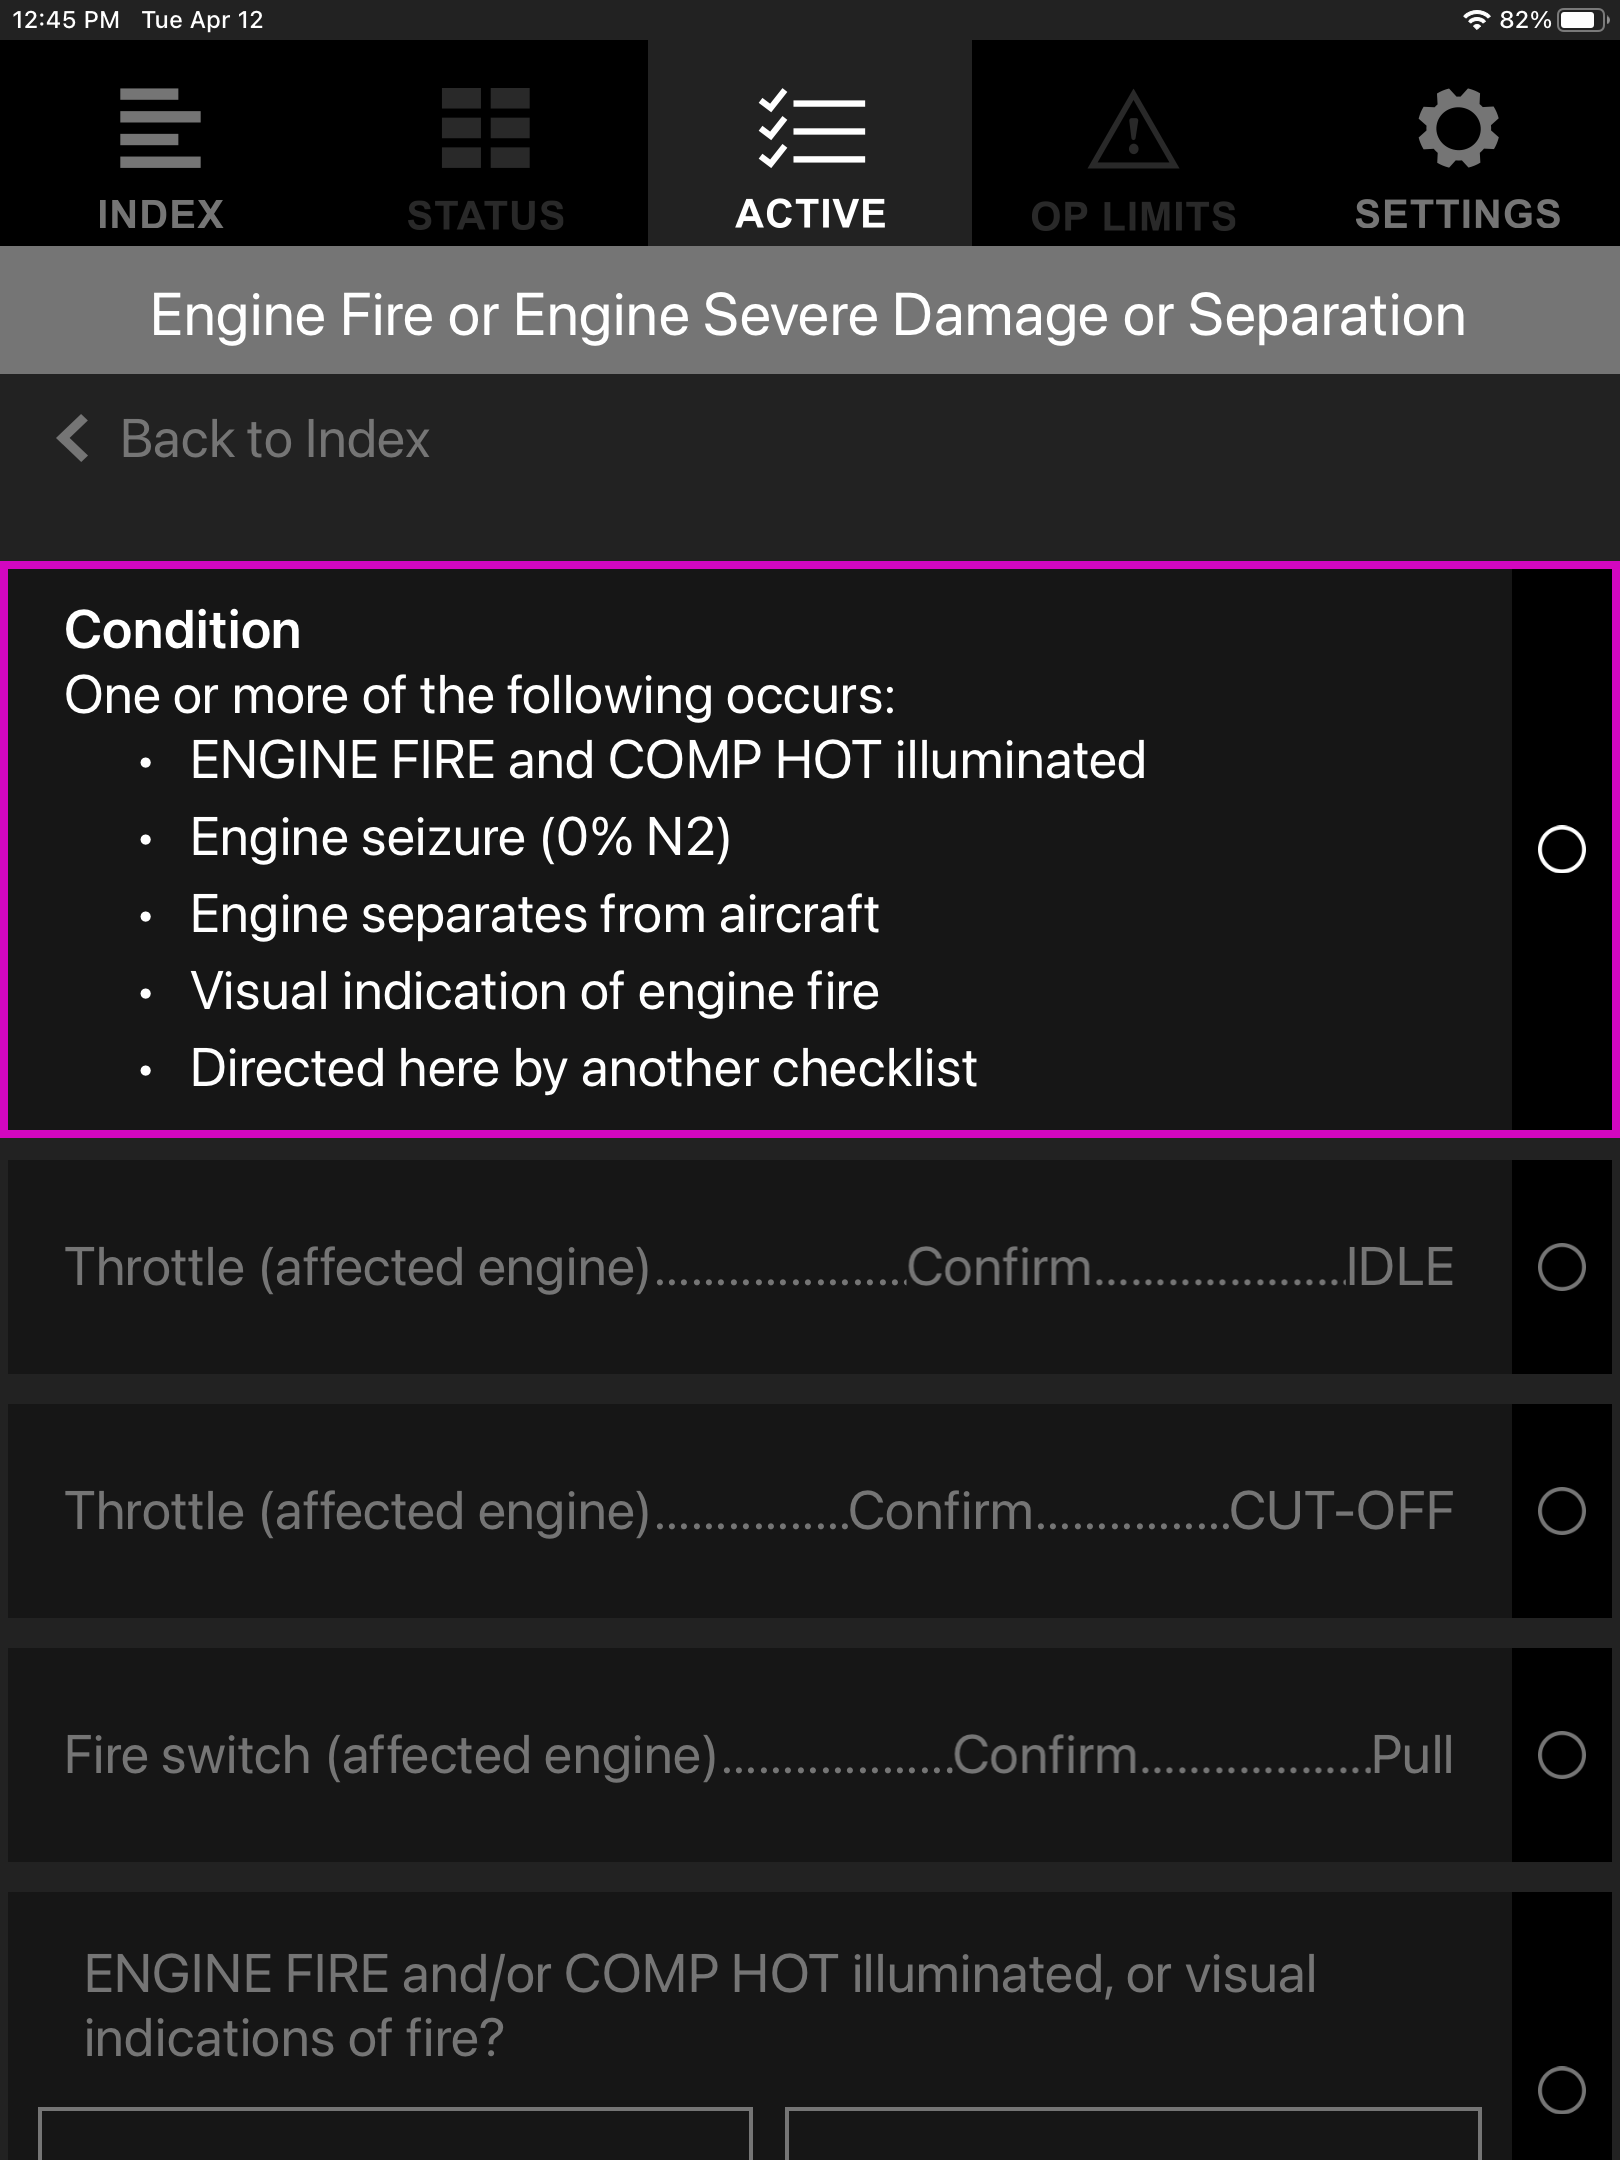 Screen capture of emergency procedure